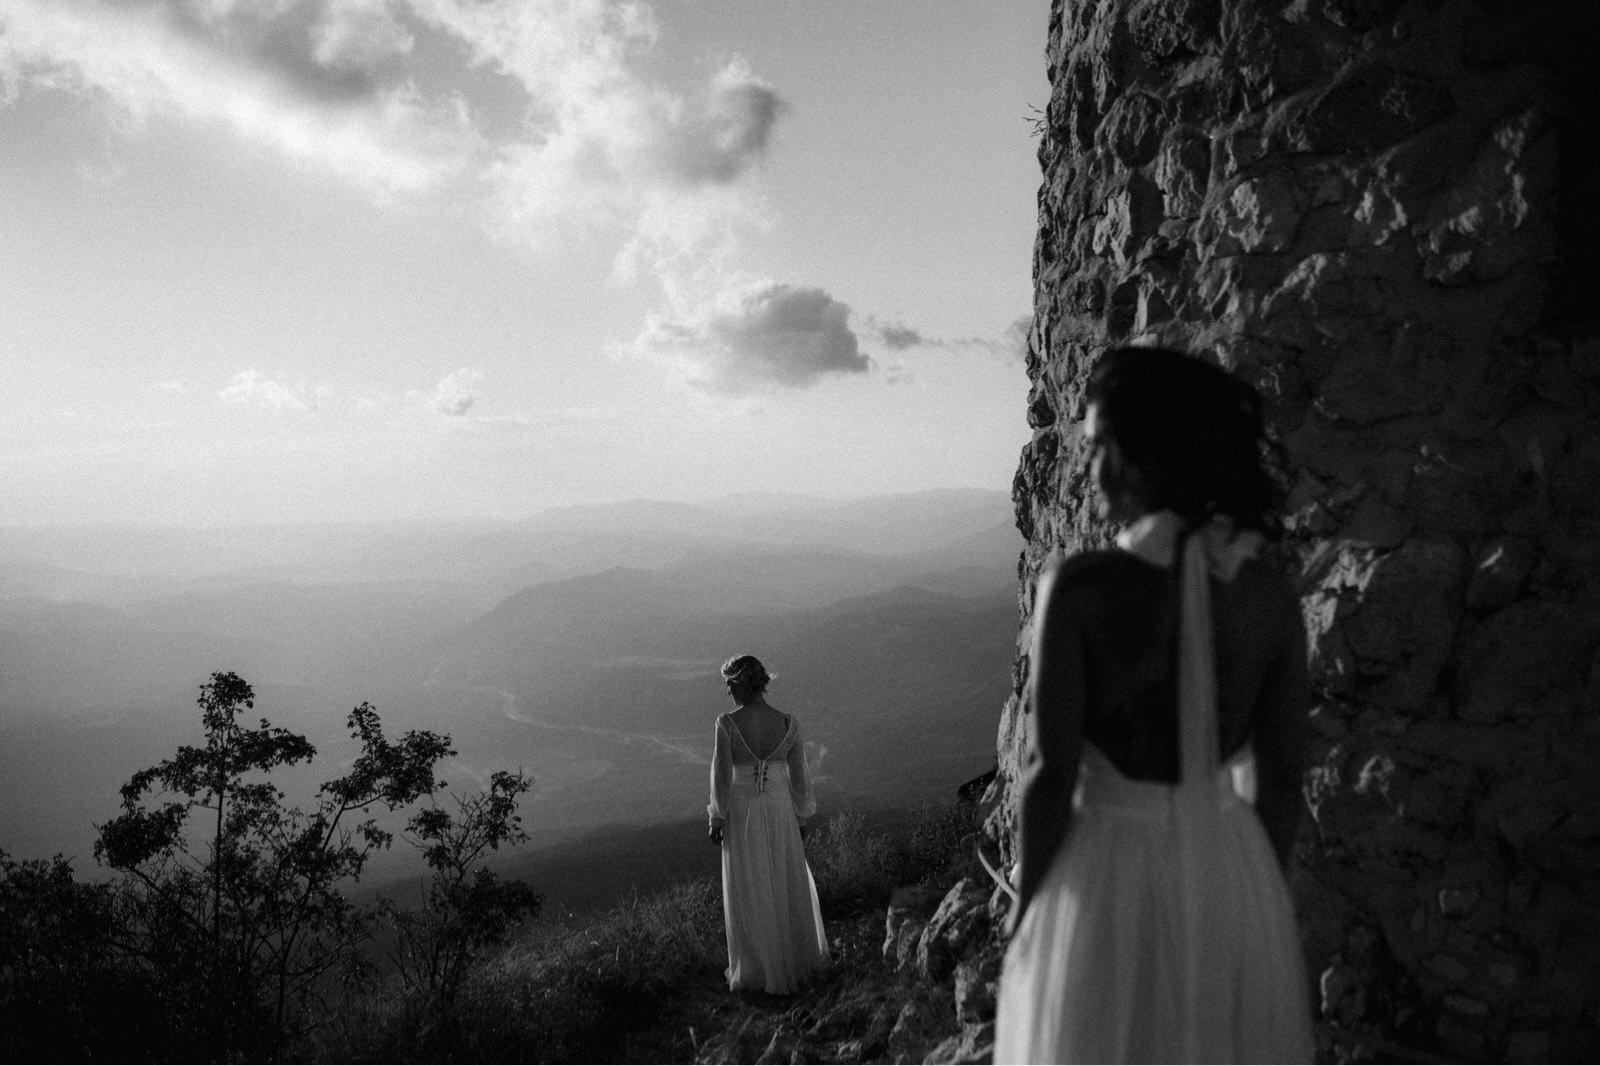 Lesbian adventurous elopement on top of a mountain in Croatia captured by Dalibora Bijelic